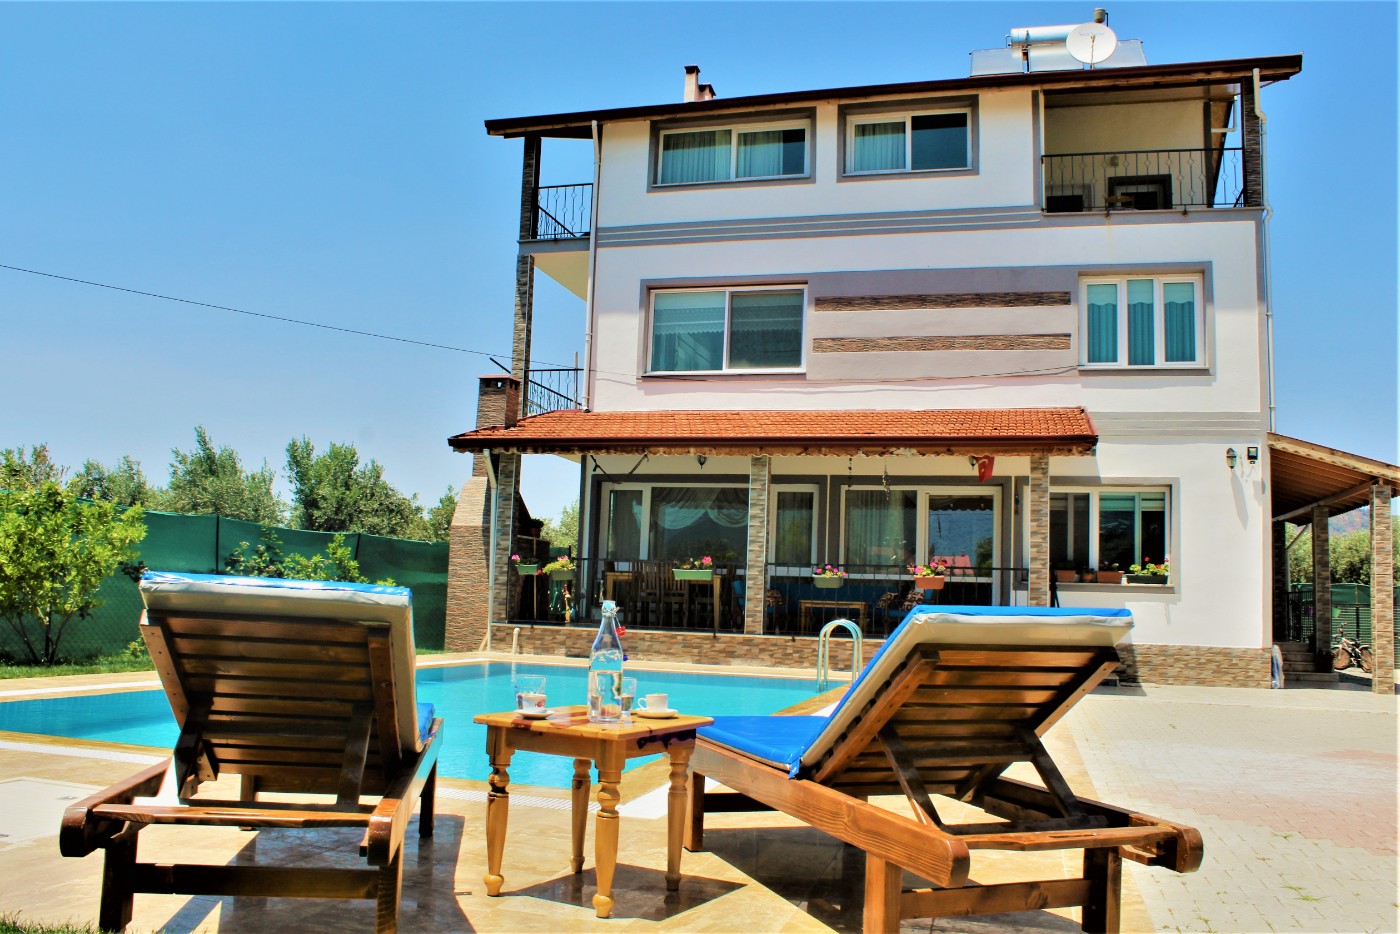 Fethiye Çamköy'de Huzuru Hissedebileceğiniz, Özel Havuzlu, 5+2 Korunaklı Villa